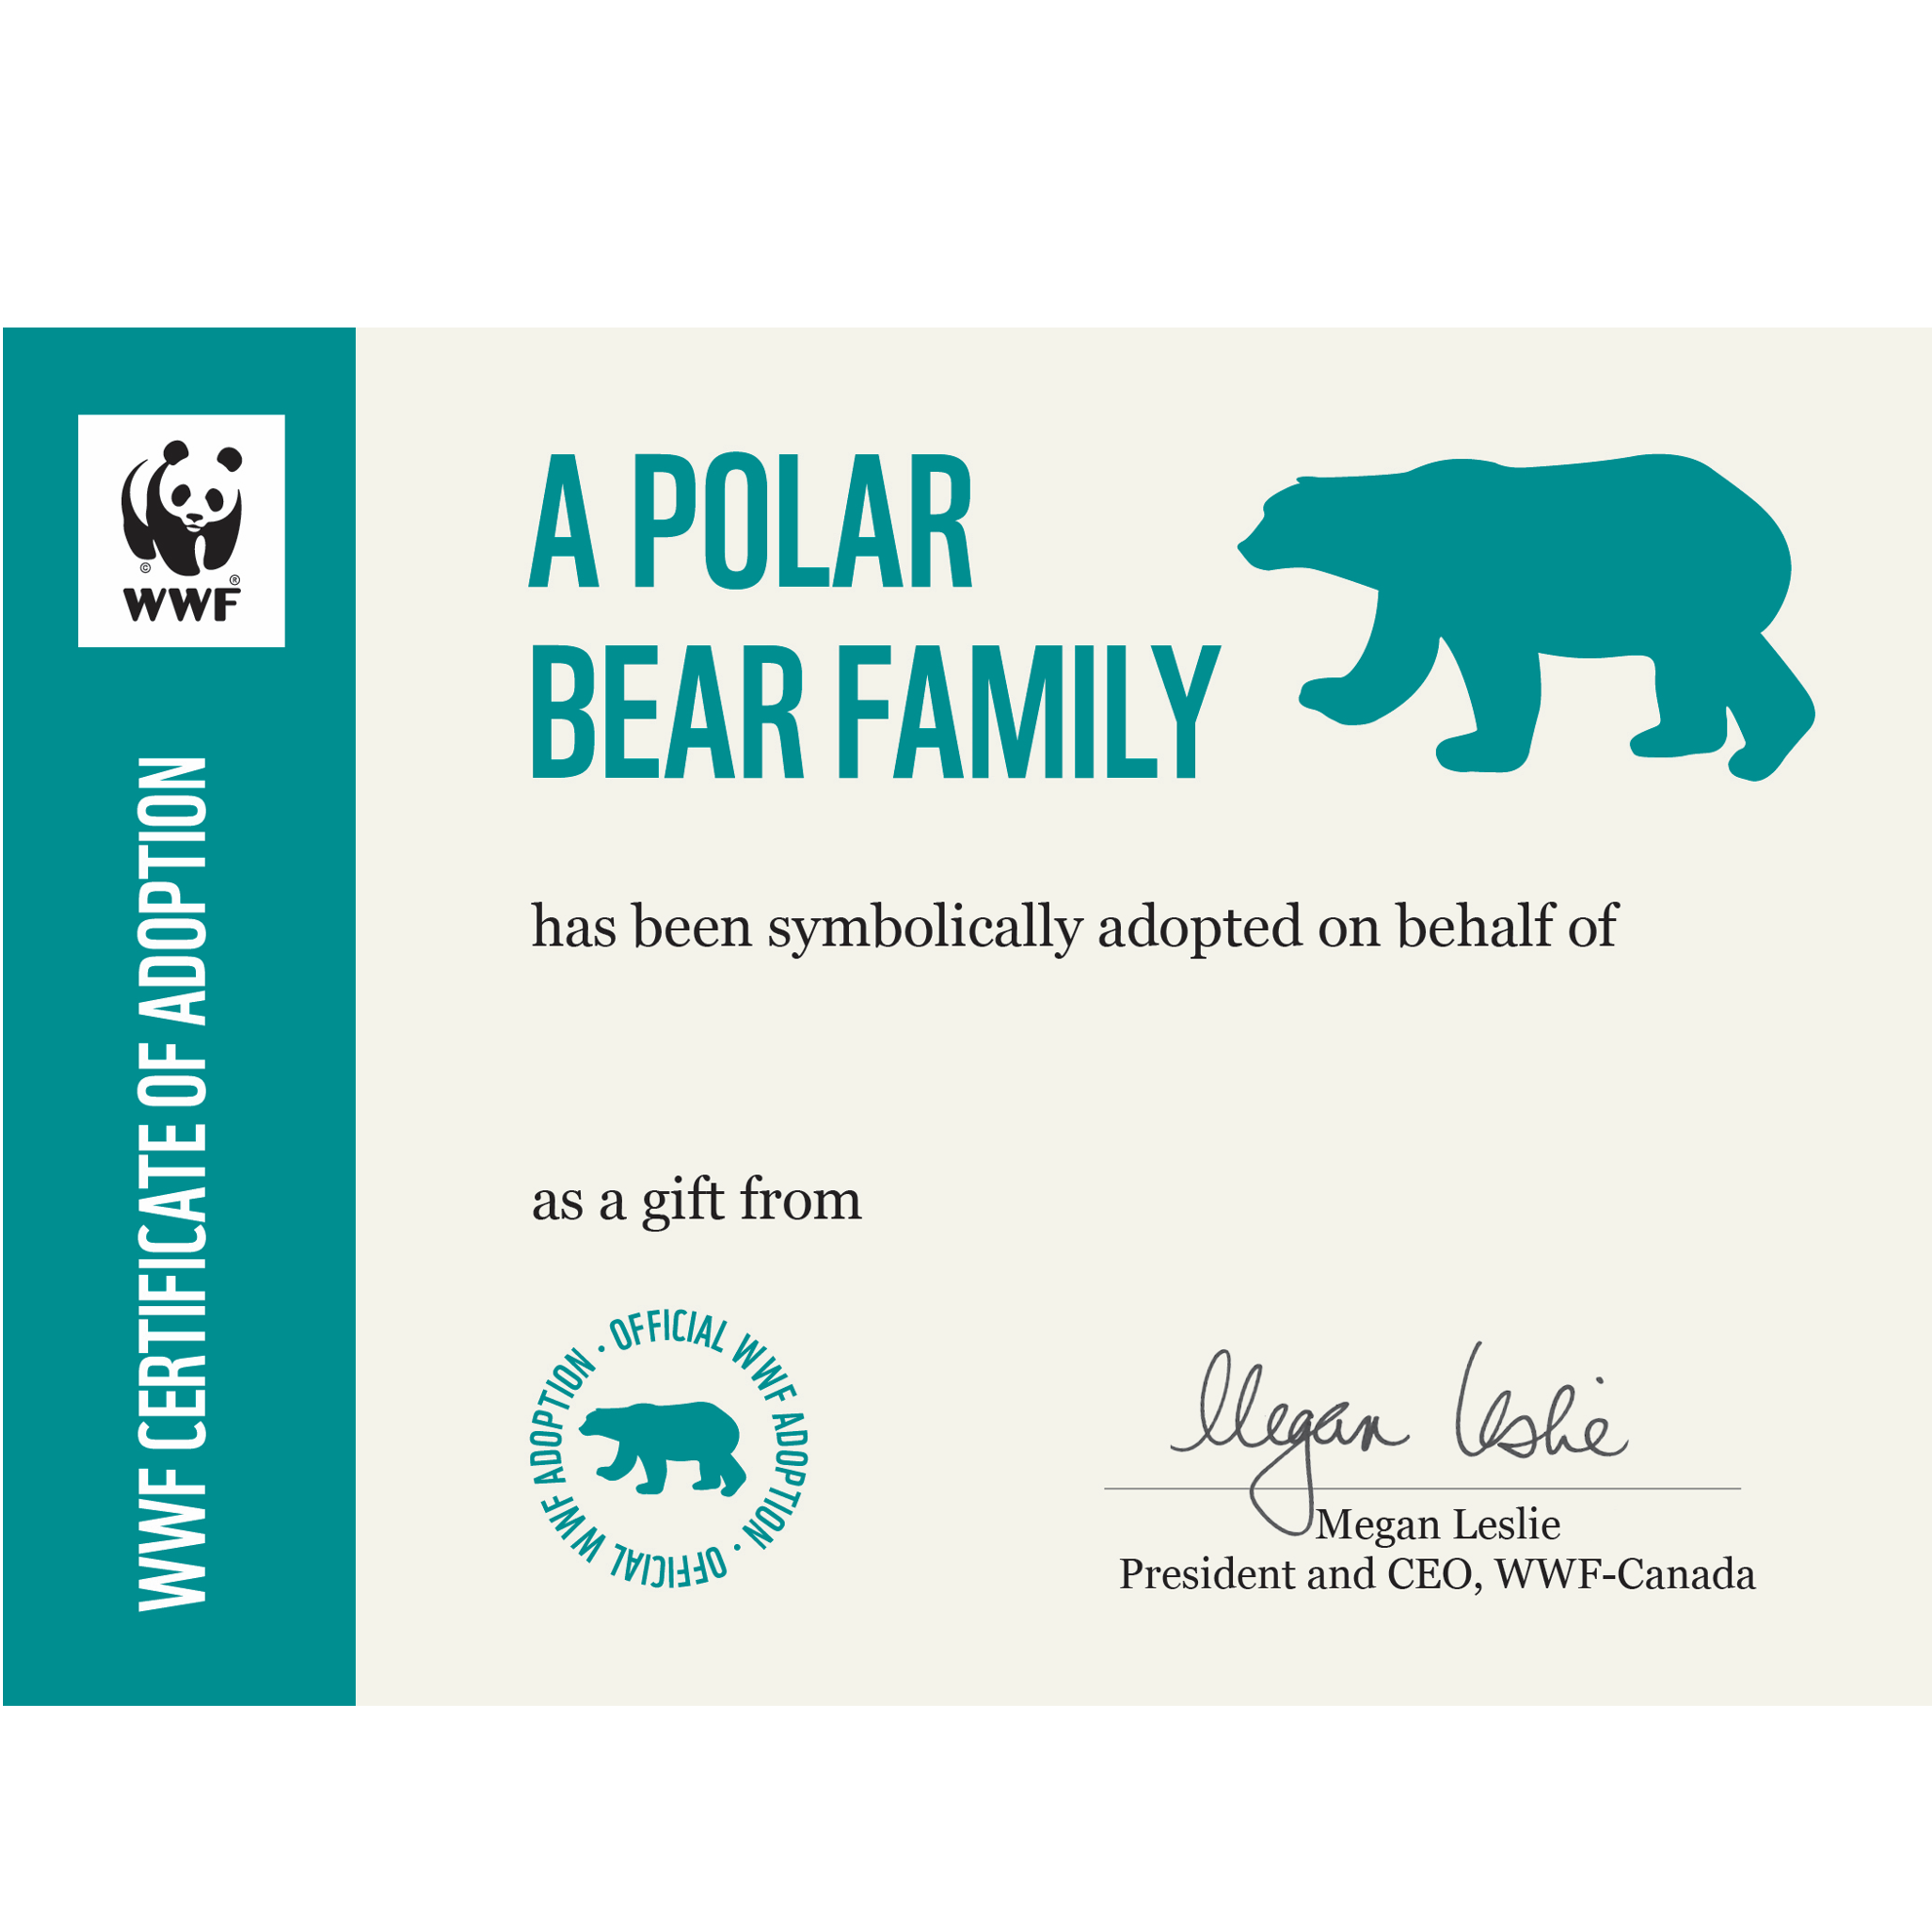 Polar bear family - WWF-Canada